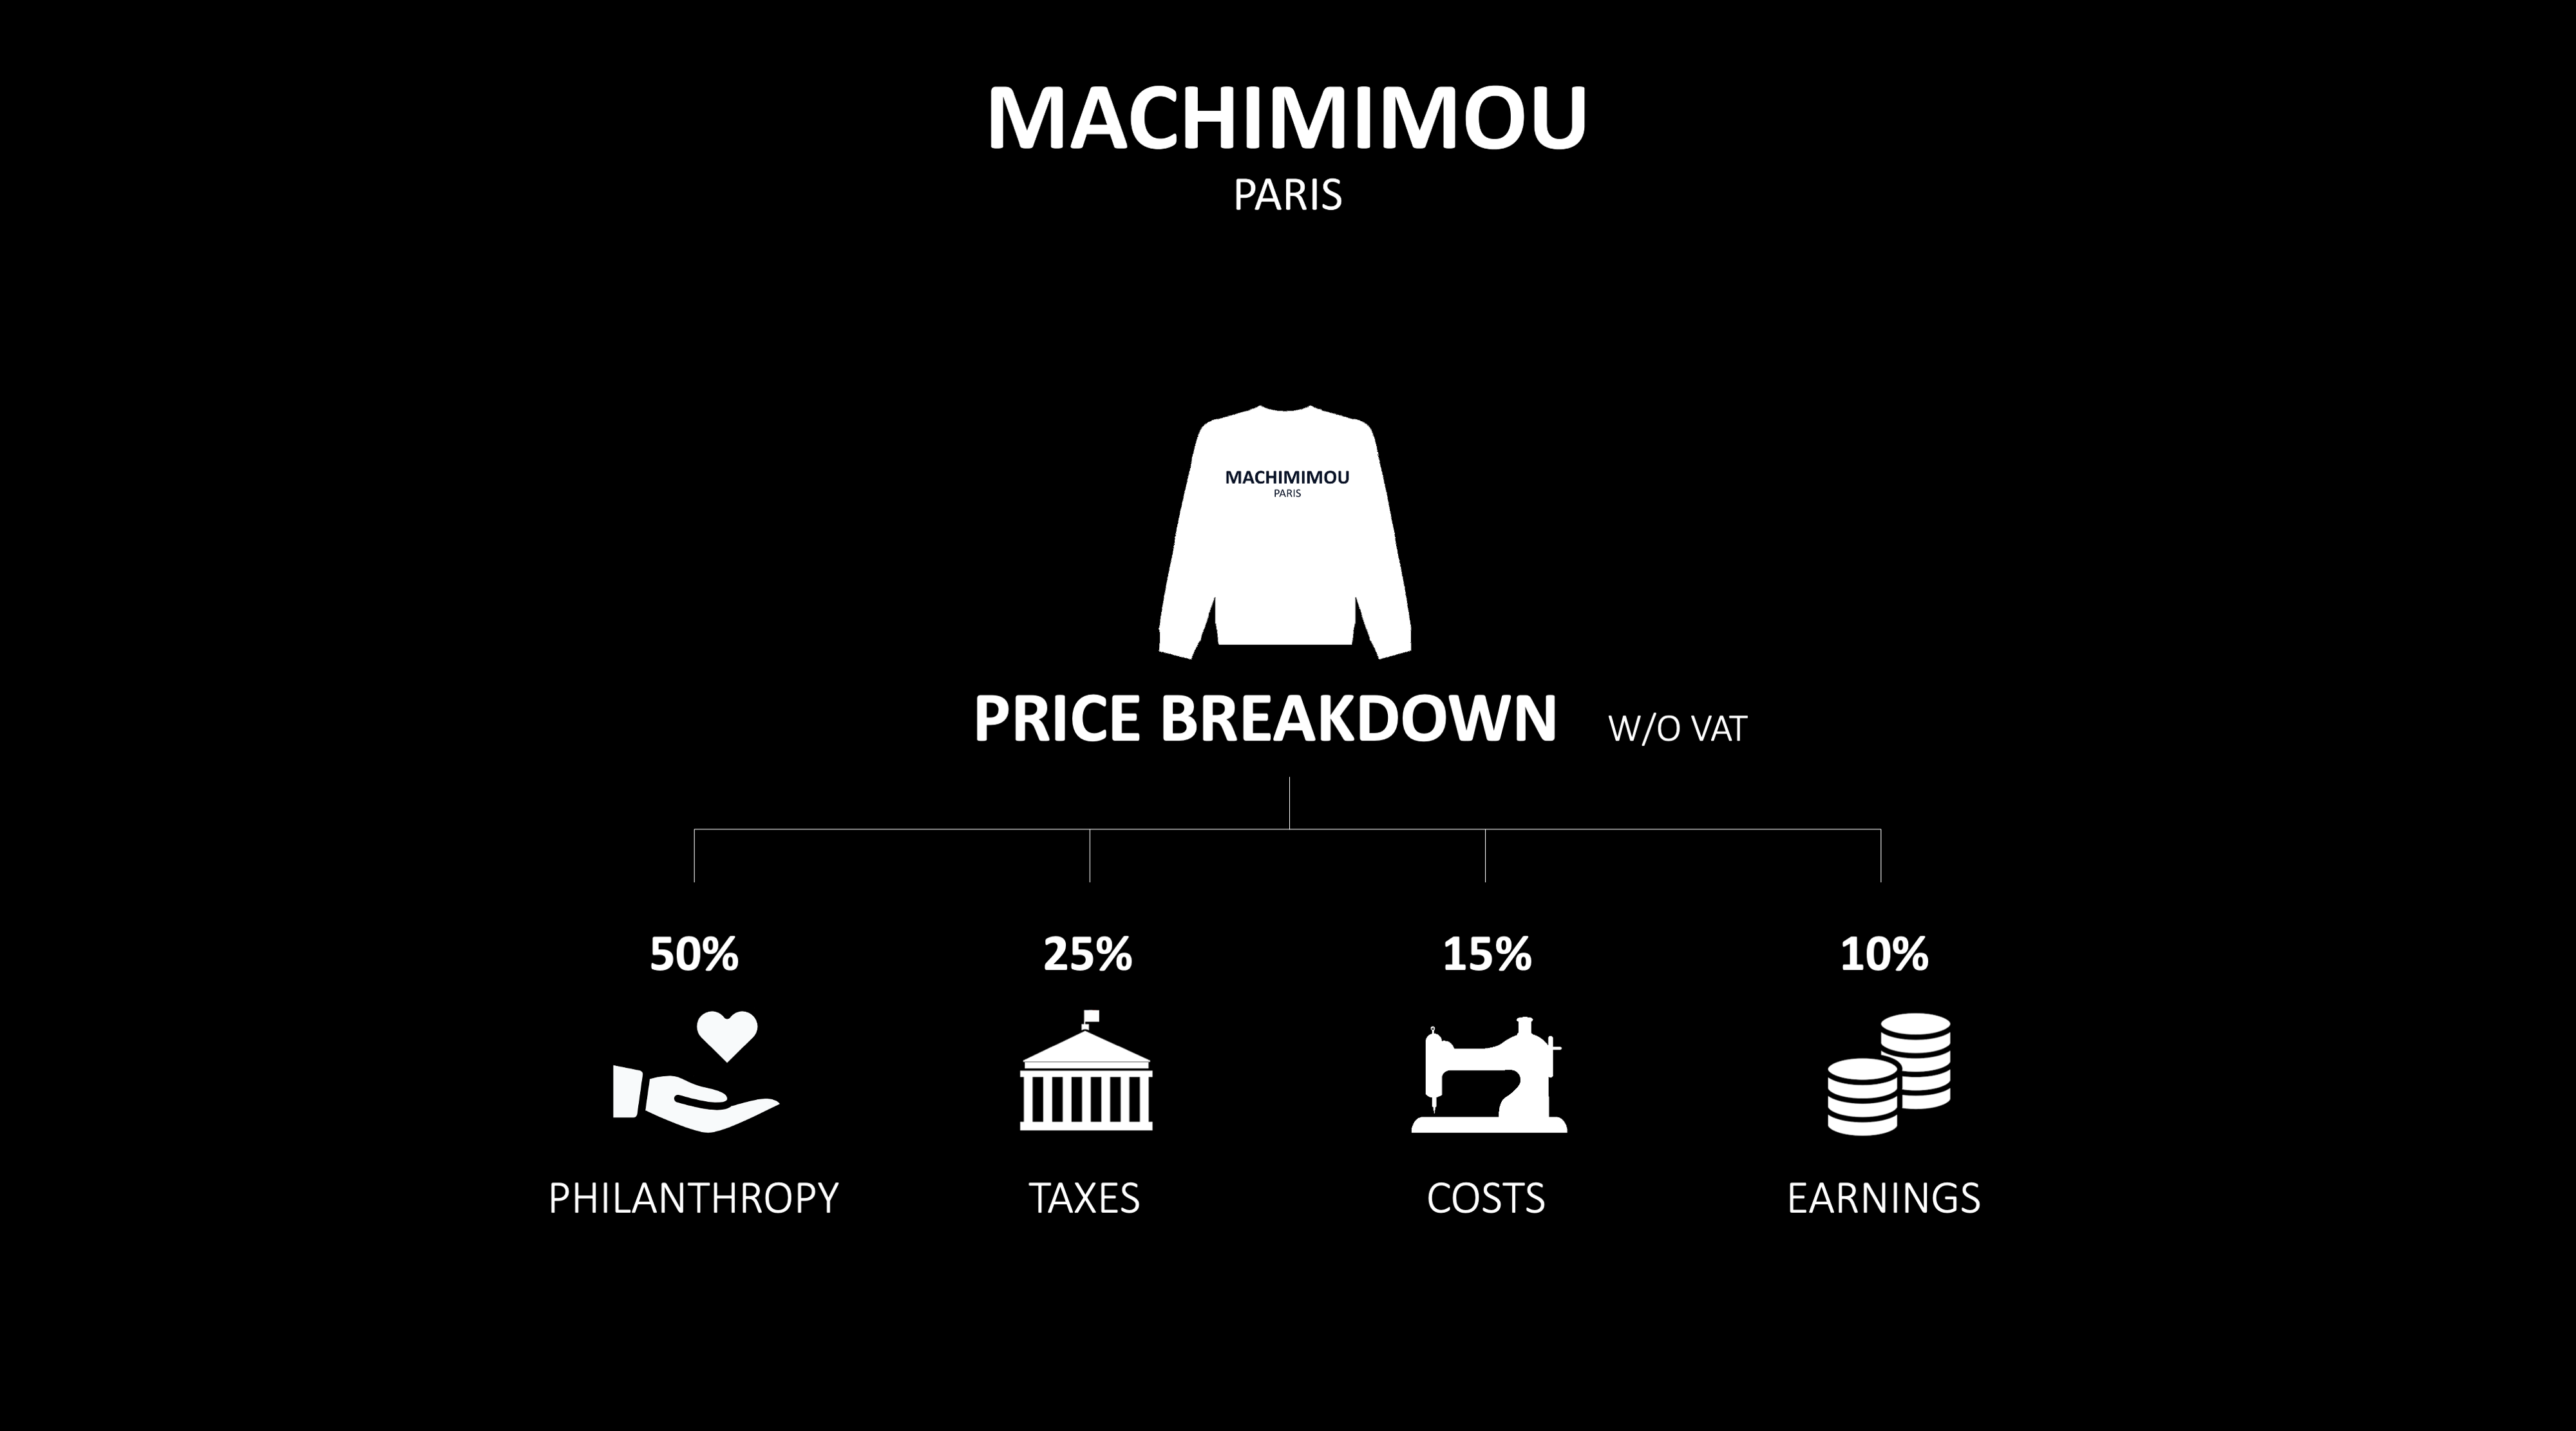 MACHIMIMOU PARIS - Price re-allocation breakdown